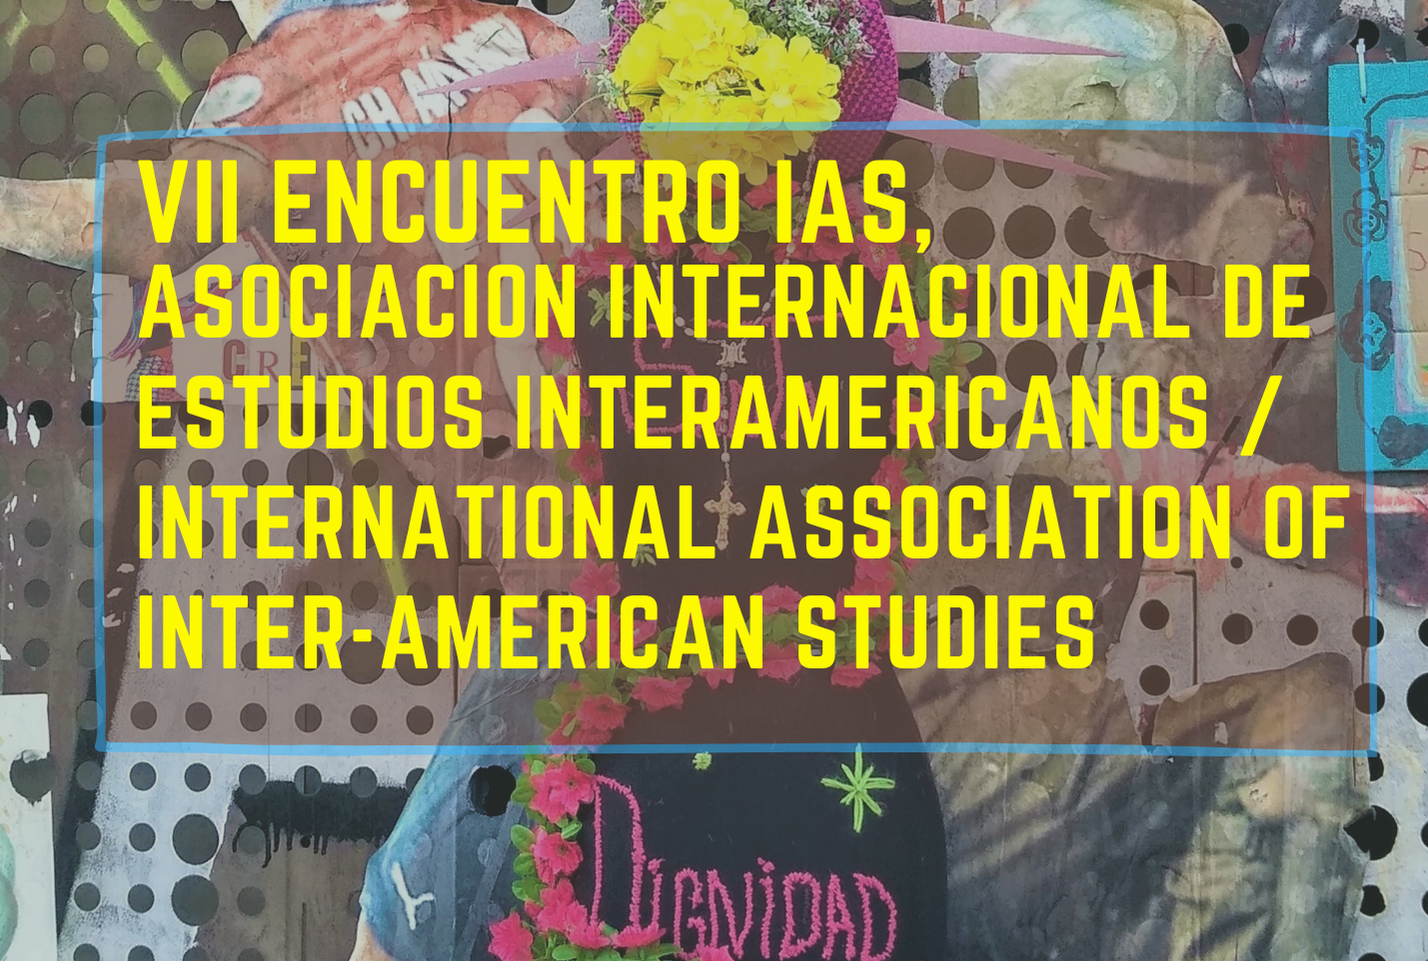 VII Encuentro de la Asociación Internacional de Estudios Interamericanos / International Association of Inter-American Studies (IAS)